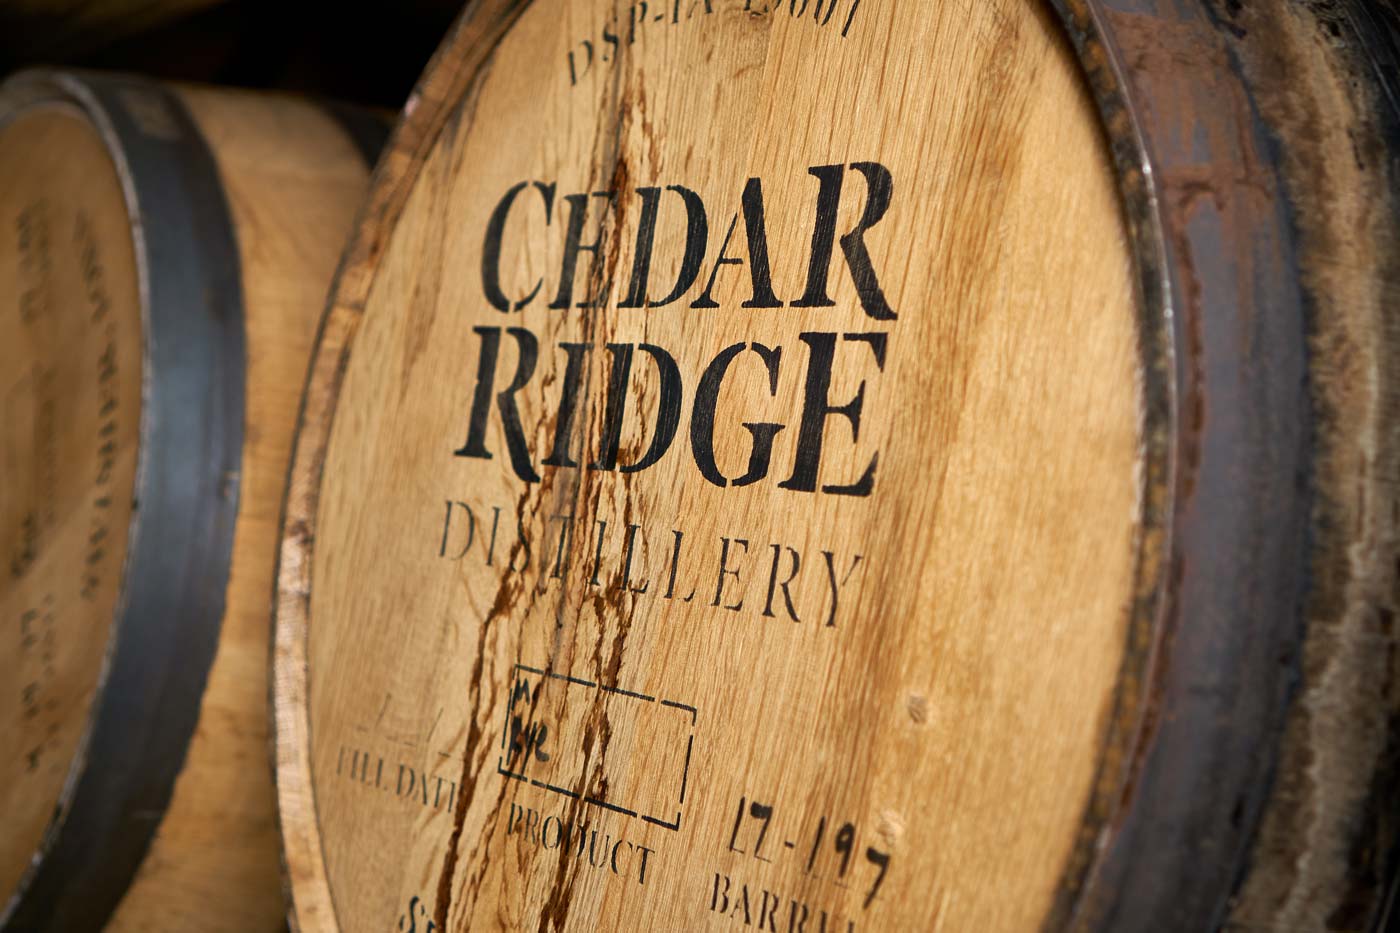 Cedar Ridge barrel